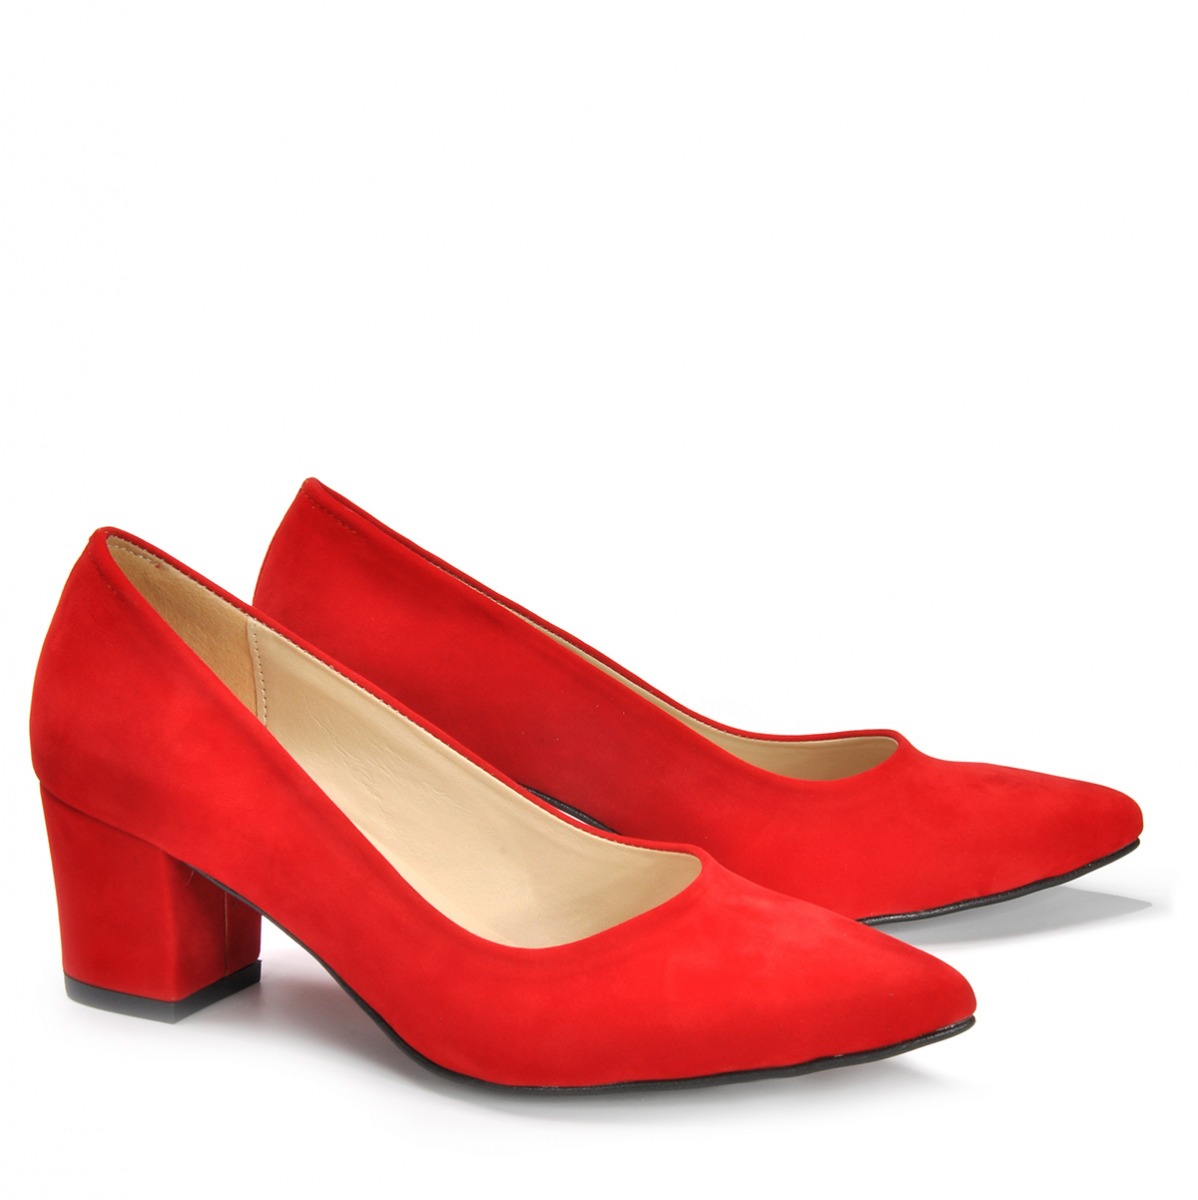 Flo Kadın  Kırmızı-Süet Klasik Topuklu Ayakkabı VZN19-111K. 5